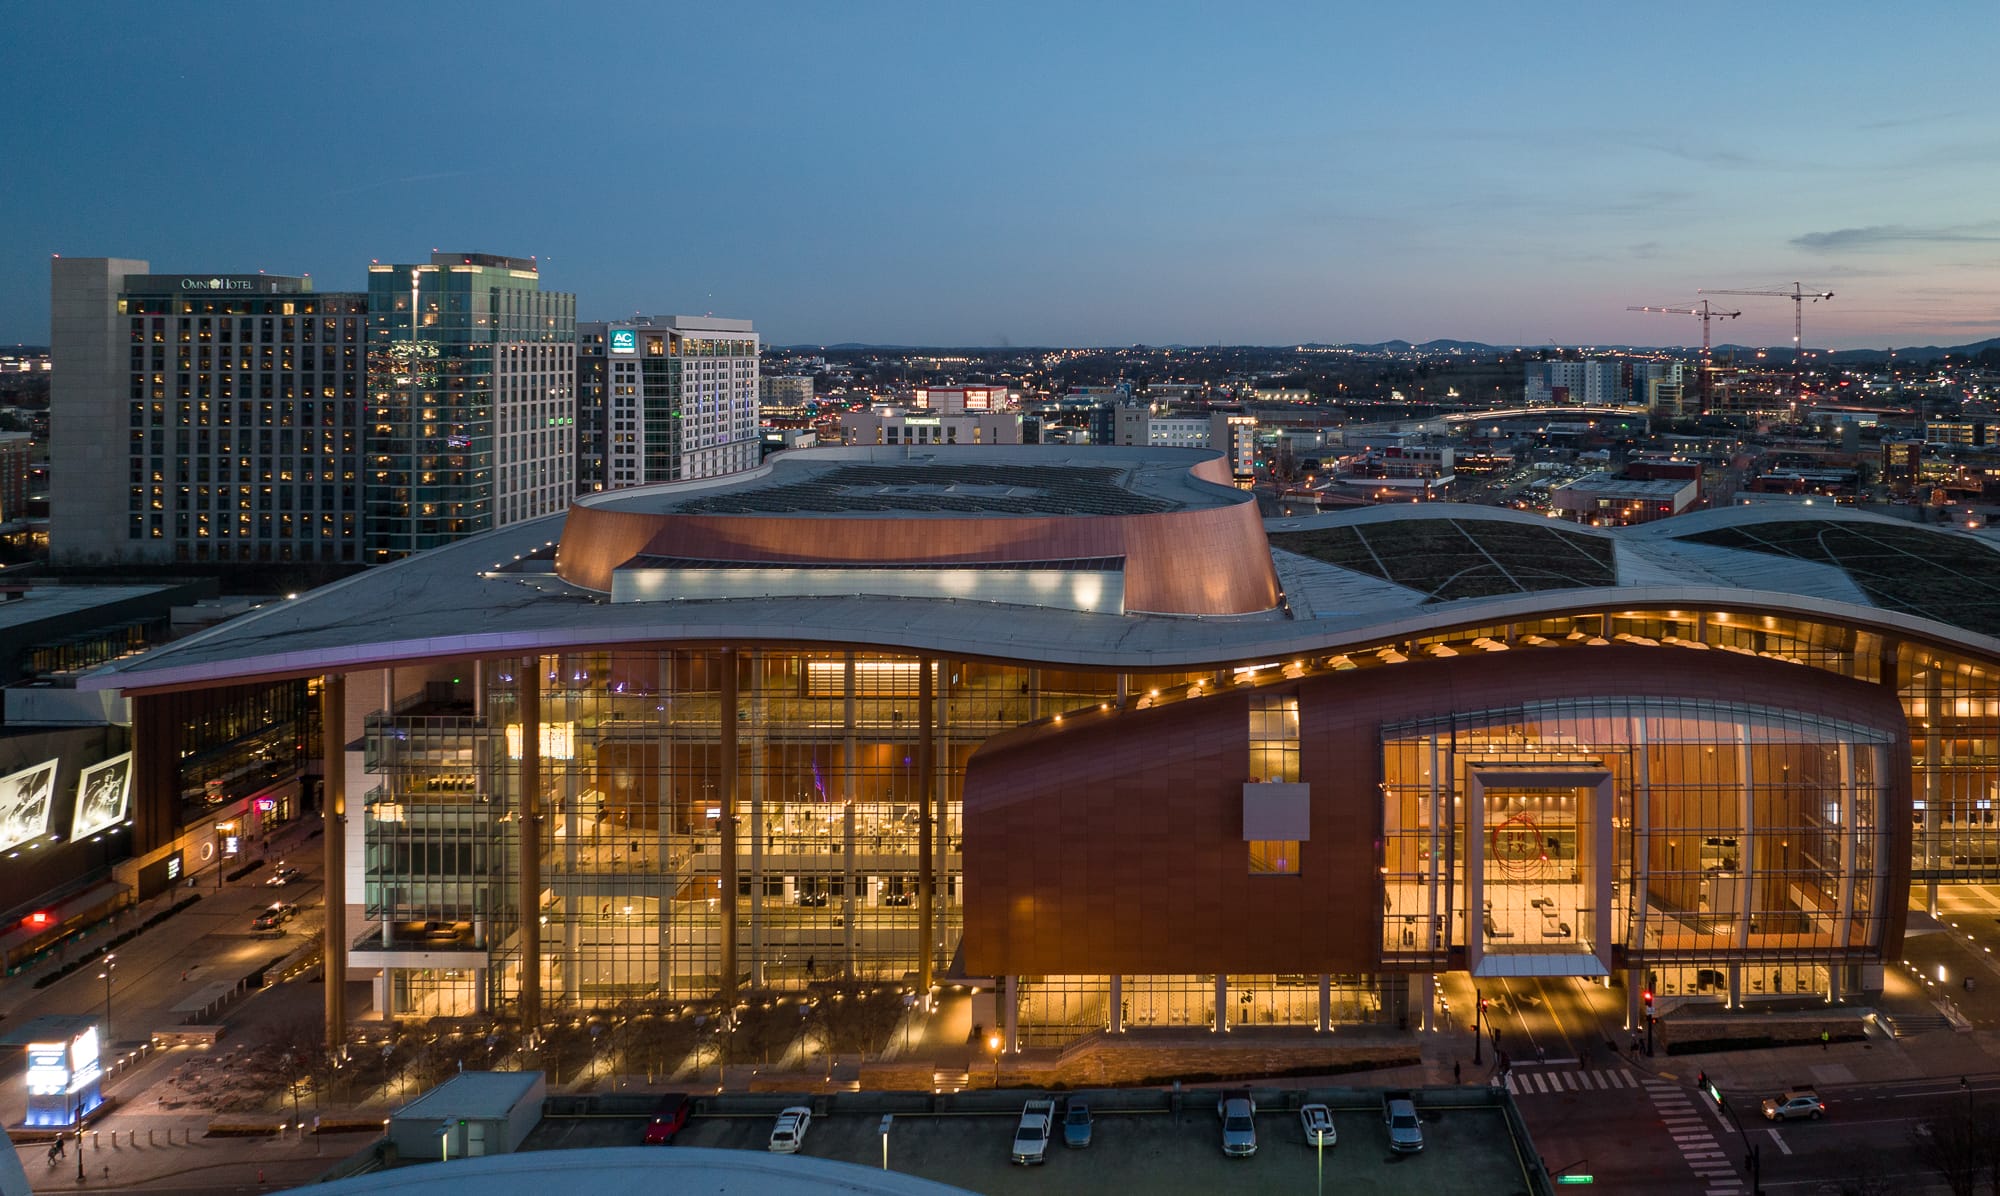 Music City Center - Nashville Commercial Architecture Photographer